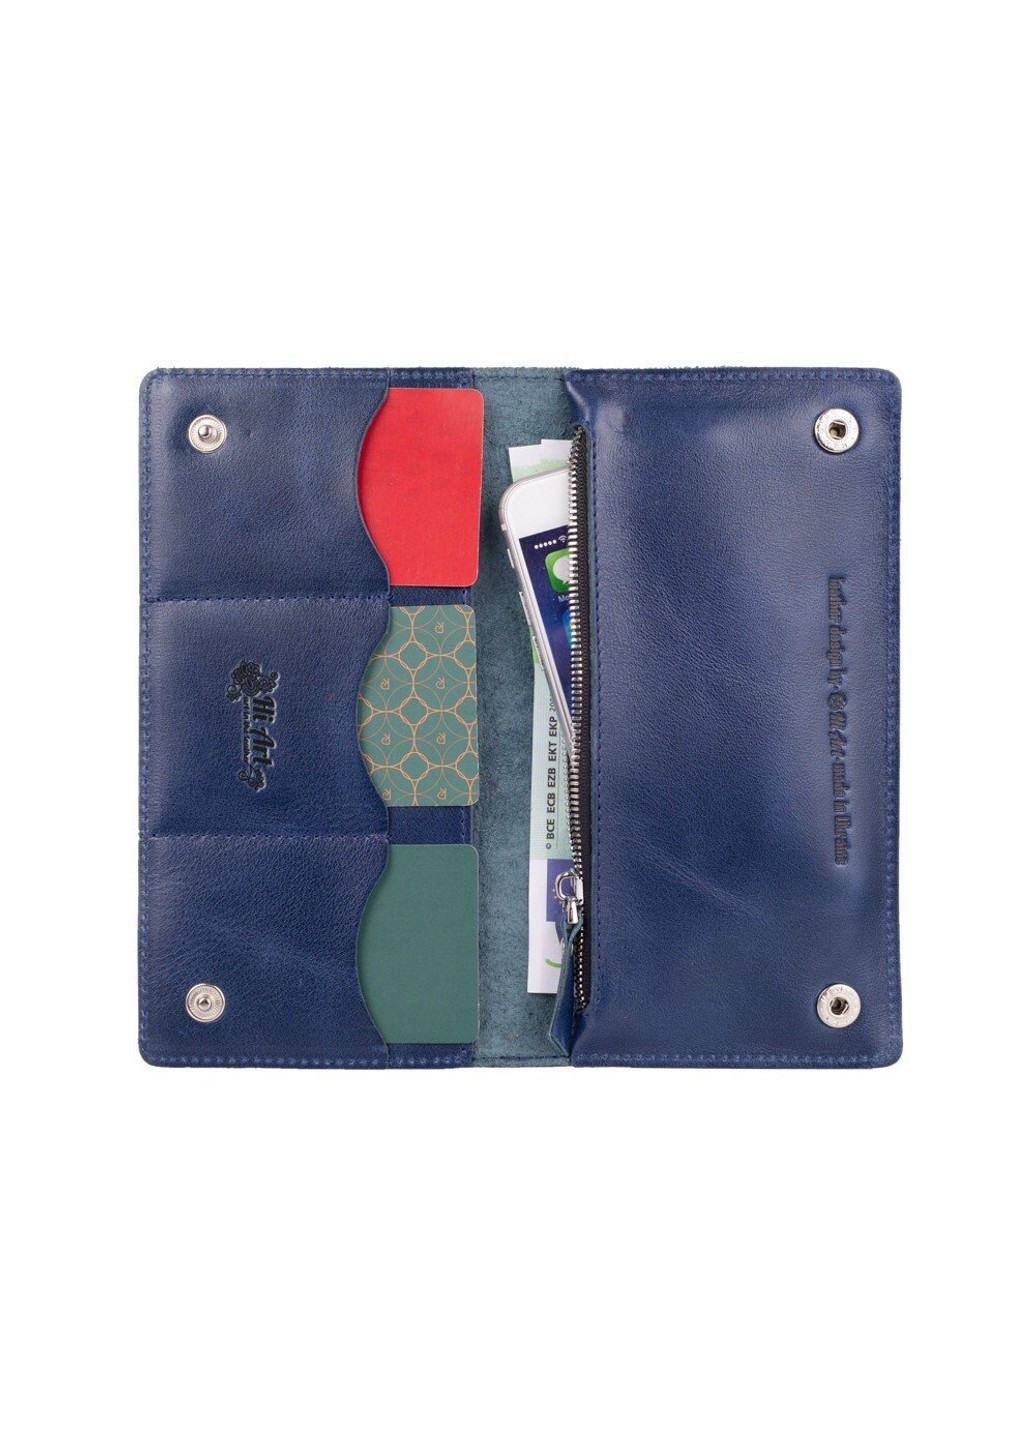 Шкіряний гаманець WP-05 Mehendi Art синій Синій Hi Art (268371340)